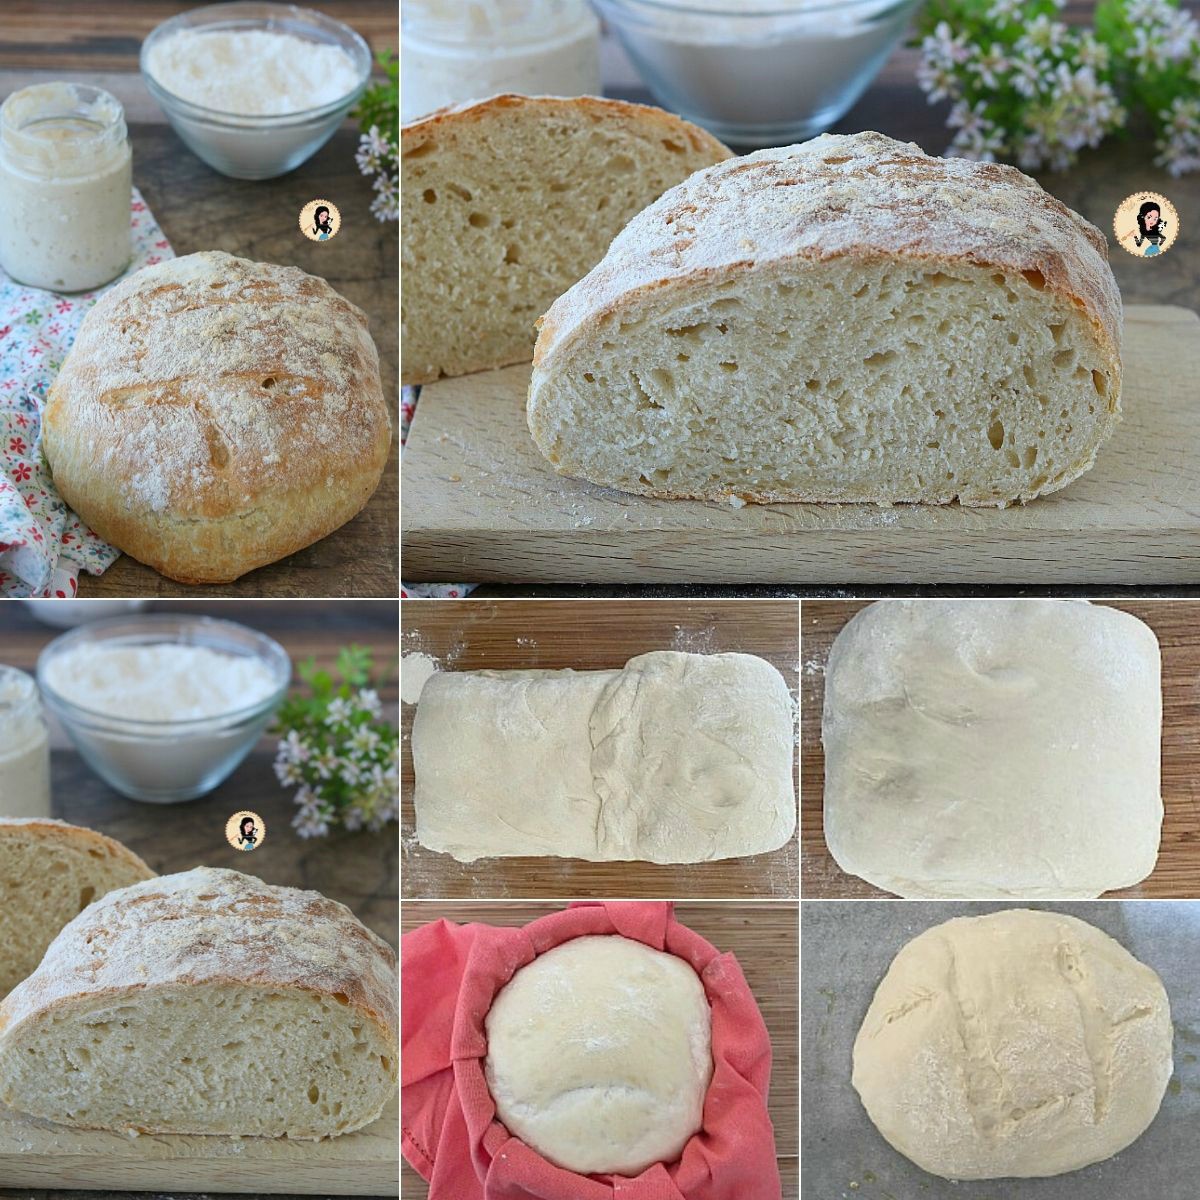 Pane con lievito madre: la ricetta per farlo in casa - Melarossa